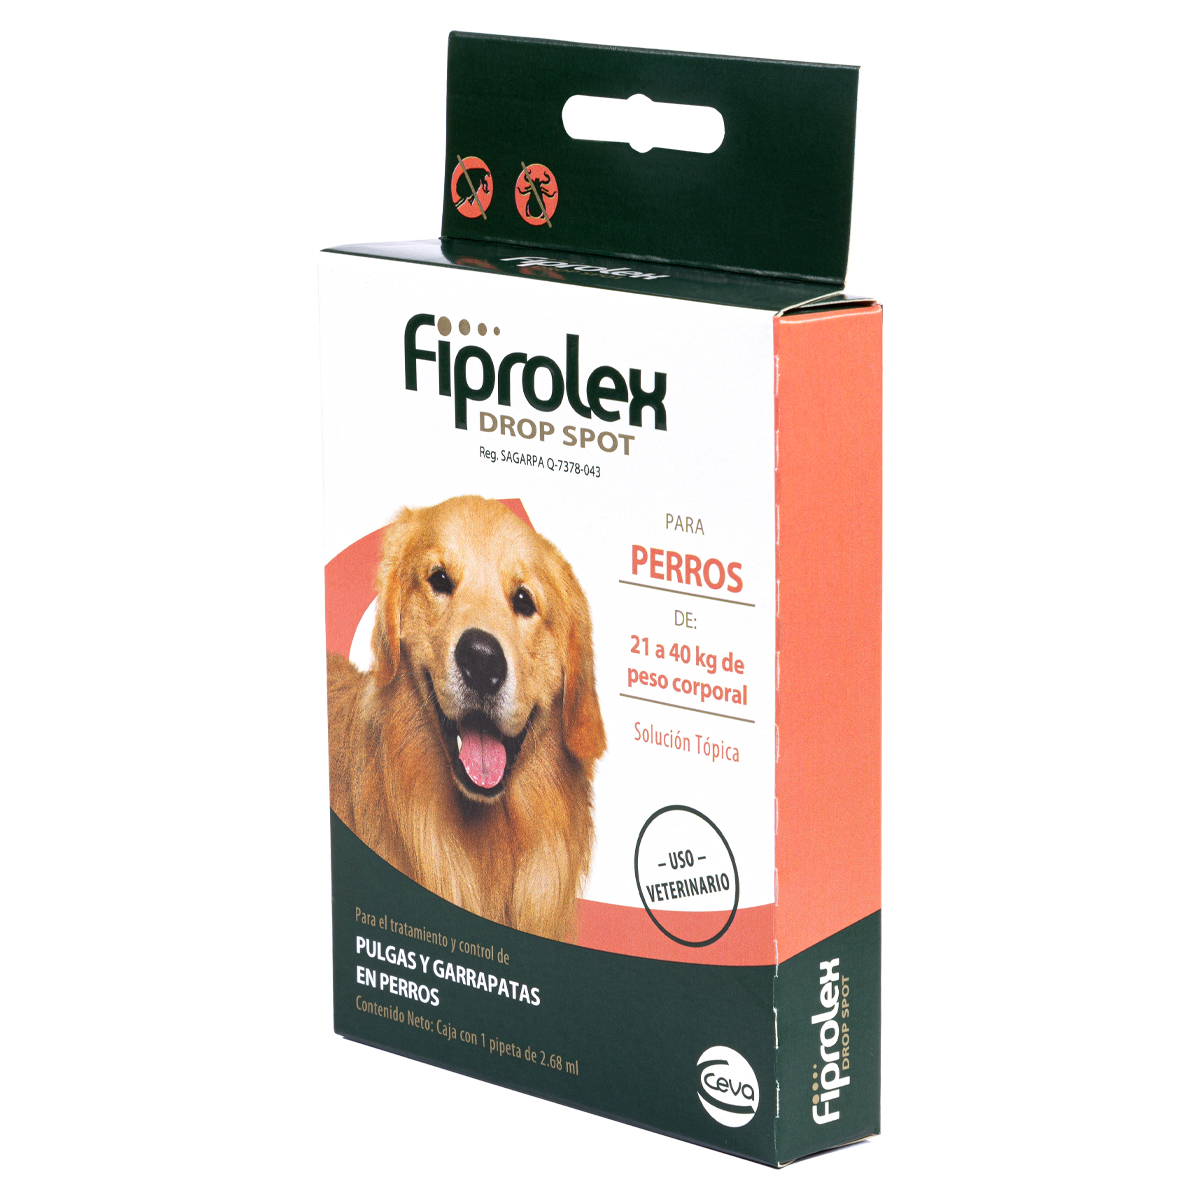 Fiprolex Pipeta Antipulgas para Perro de 21 a 40 kg